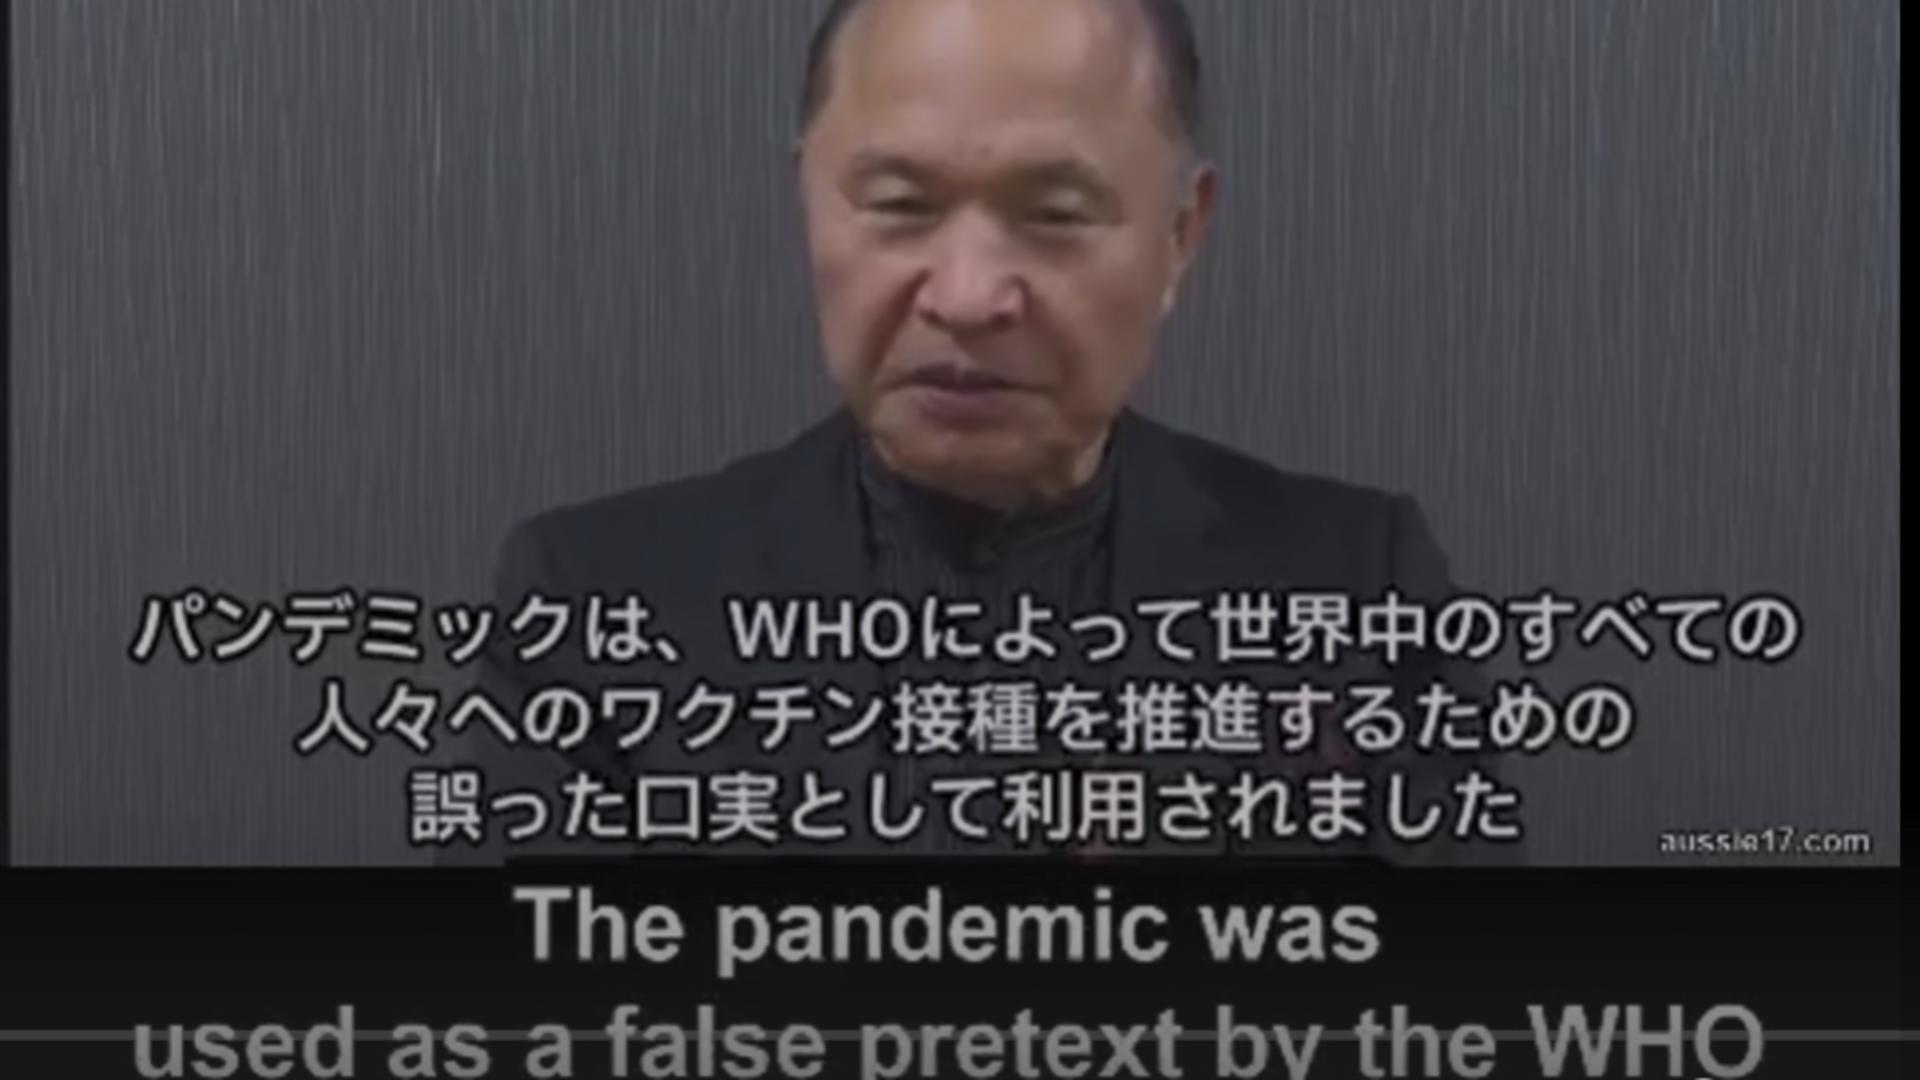 Profesor emerit la Universitatea din Osaka: "Pandemia a fost folosită ca pretext fals de către OMS pentru a stimula vaccinarea tuturor”